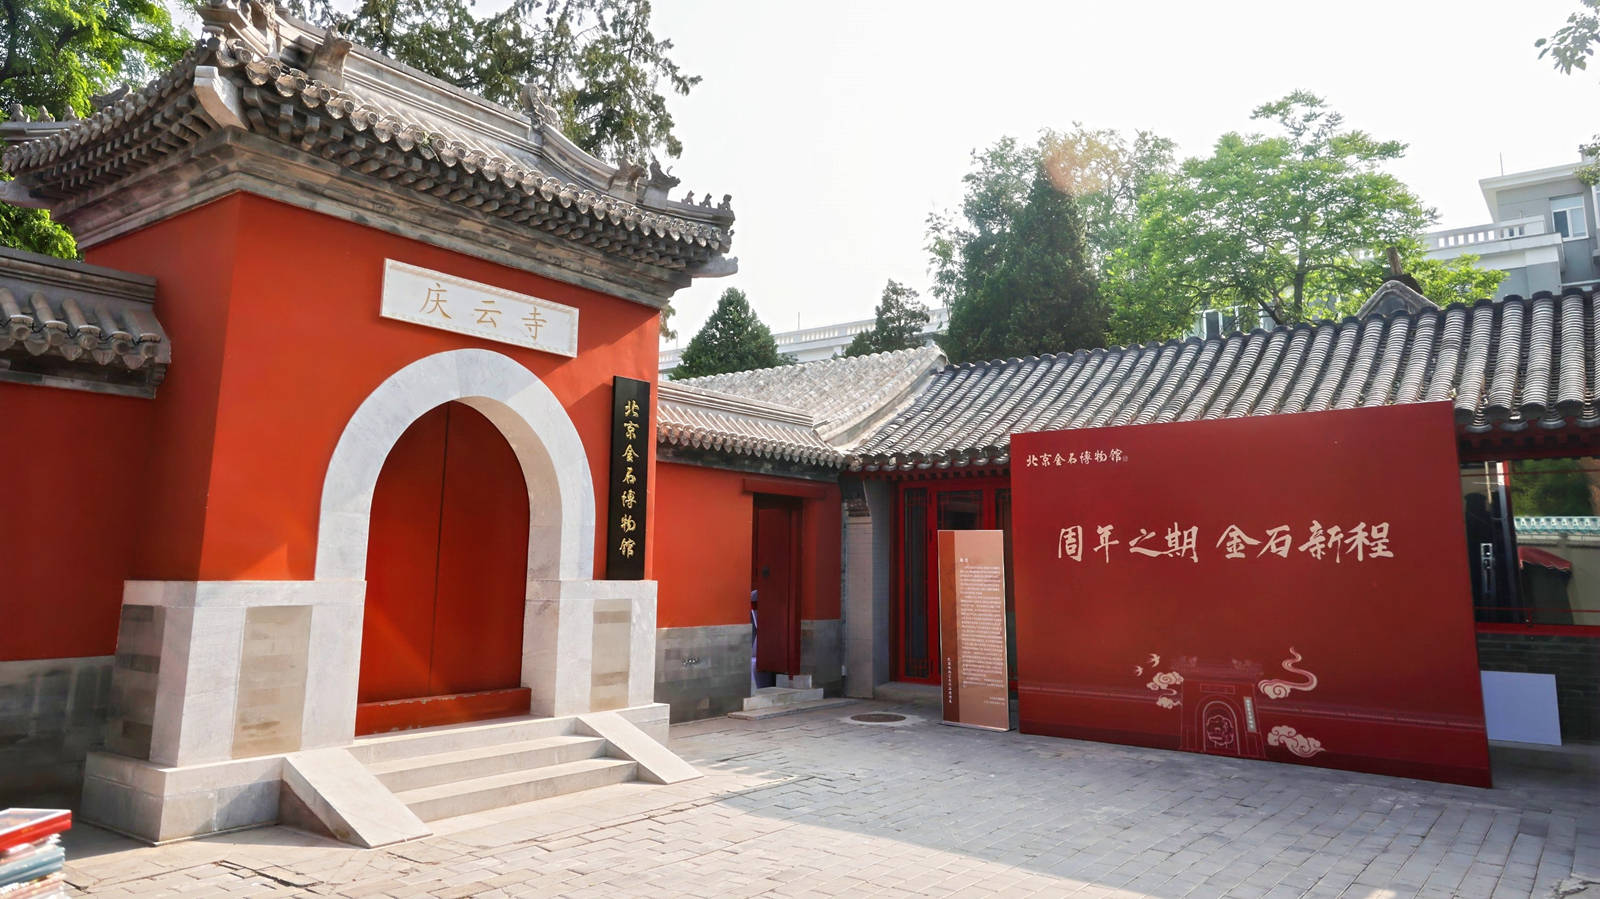 北京金石博物馆 文化艺术展开幕 周年之期·金石新程